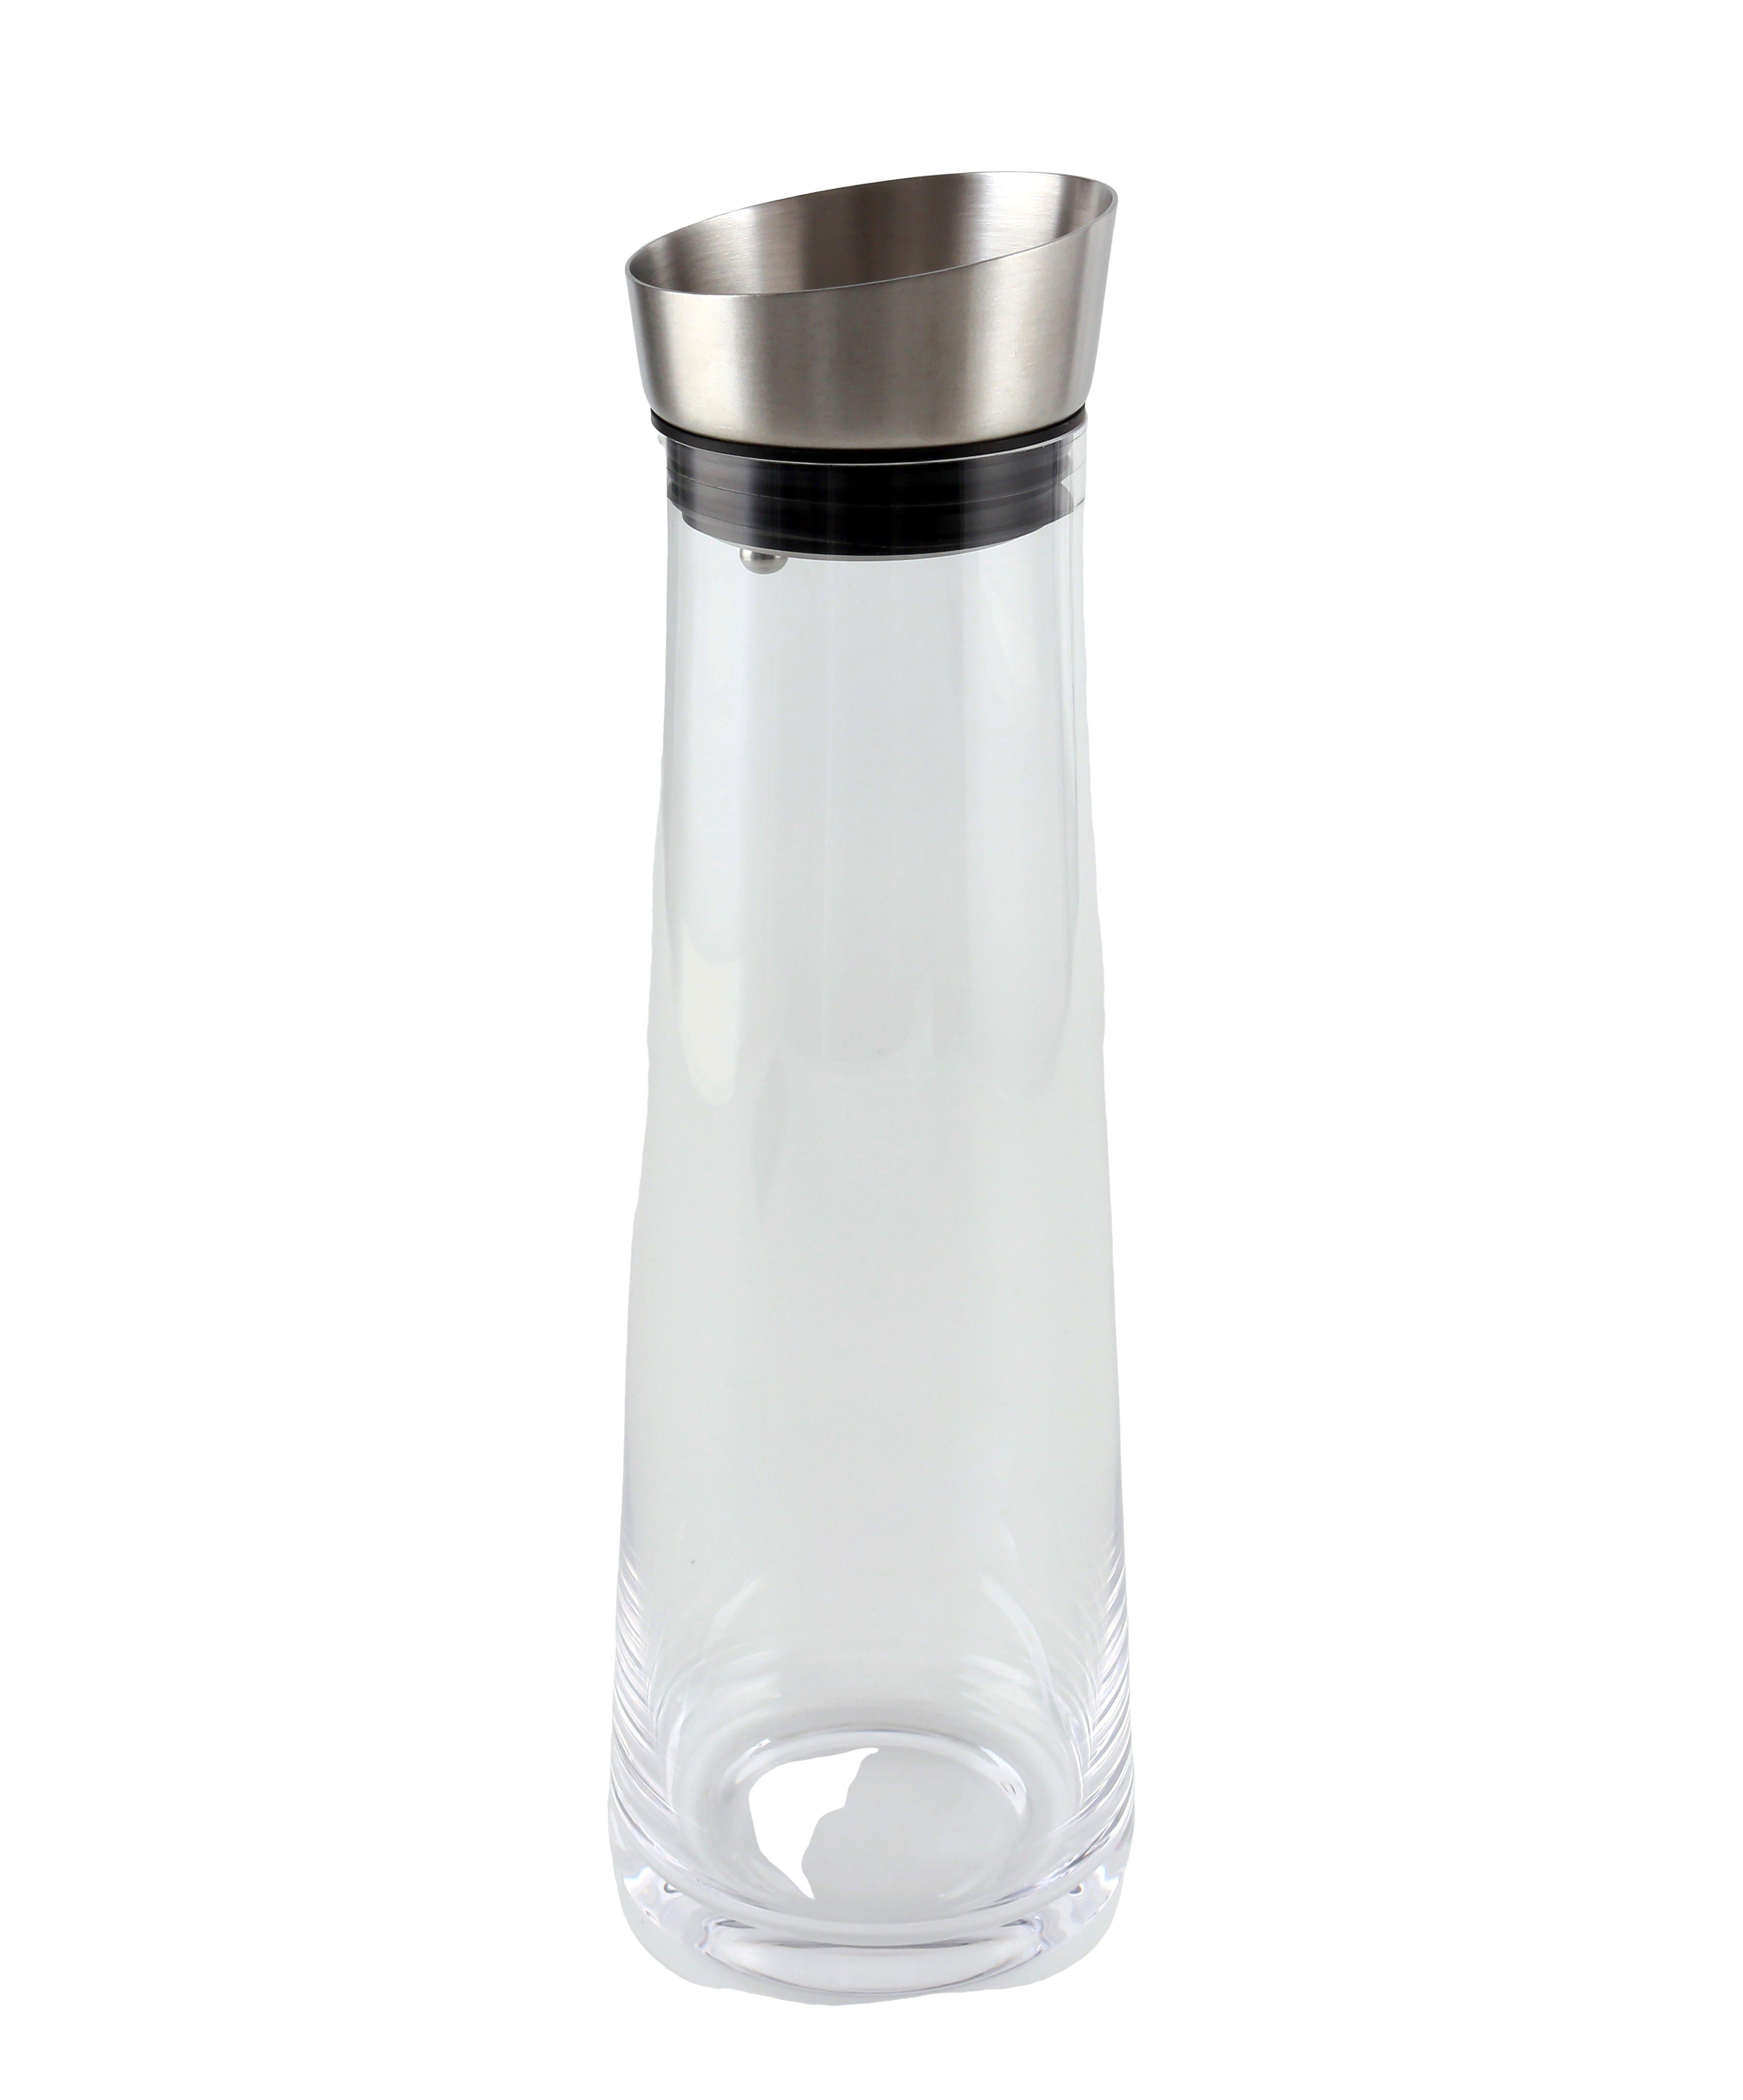 Glaskrug Tyra mit Deckel, ca. 1,2 L - Klar/Edelstahlfarben, MODERN, Glas/Kunststoff (1,2l) - Luca Bessoni